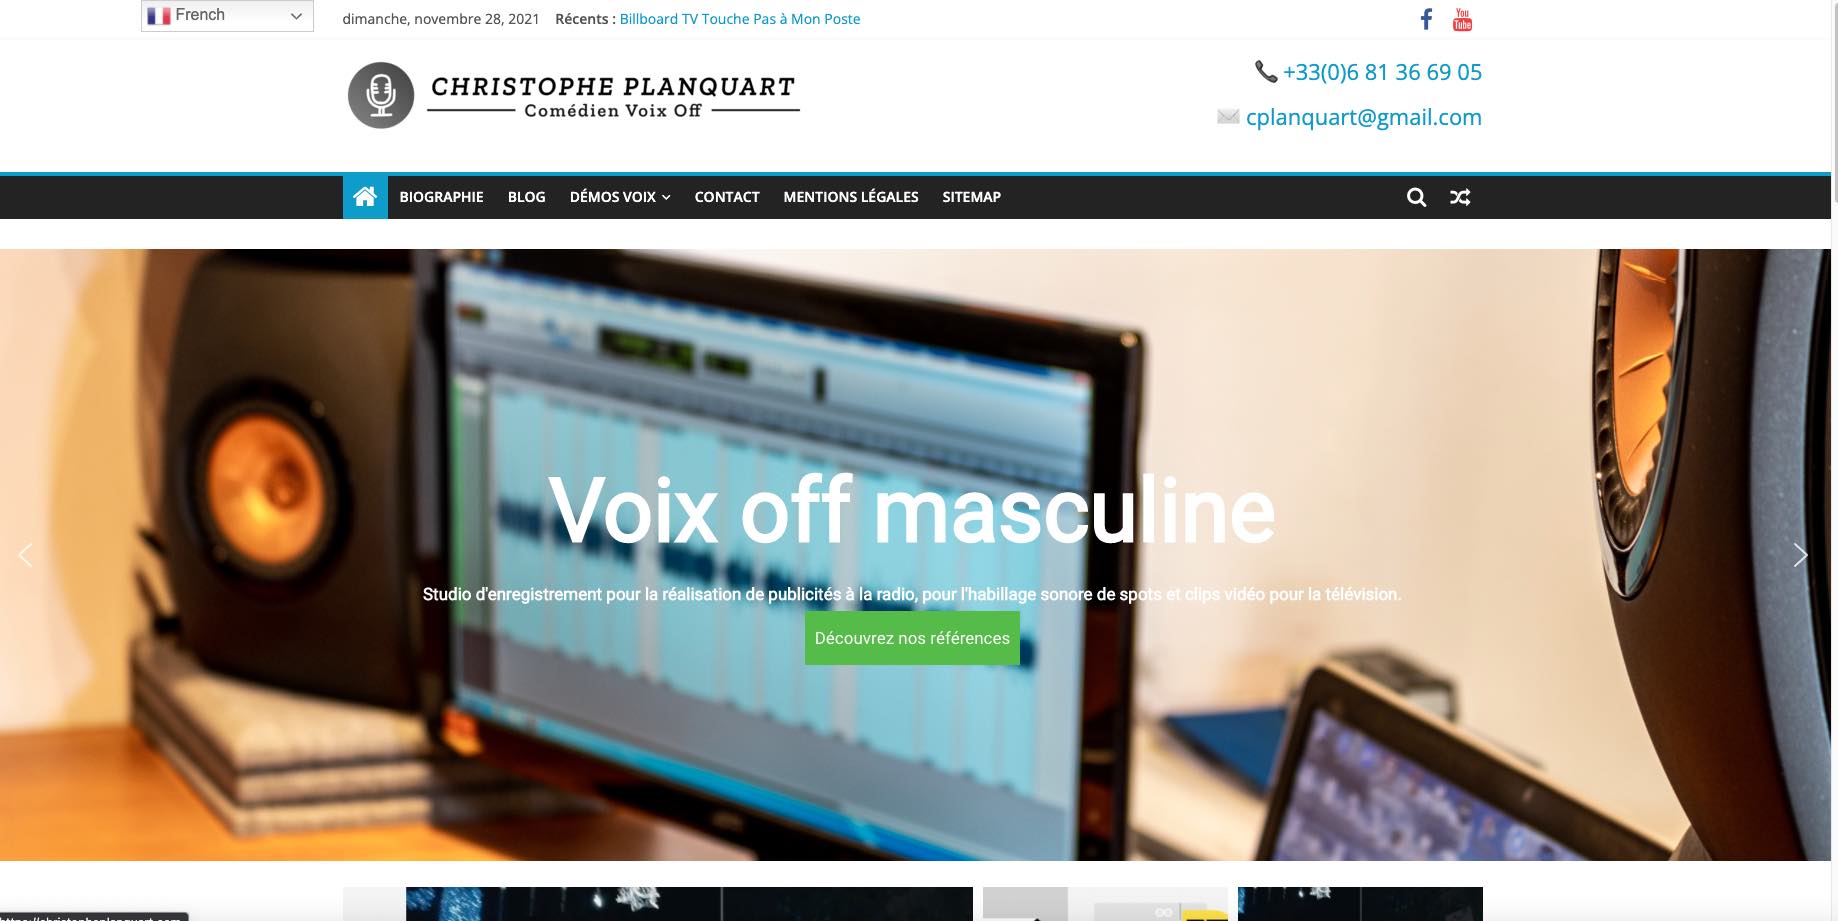 Création d'un nouveau site web pour Monsieur Christophe Planquart, spécialisé dans la voix off masculine.